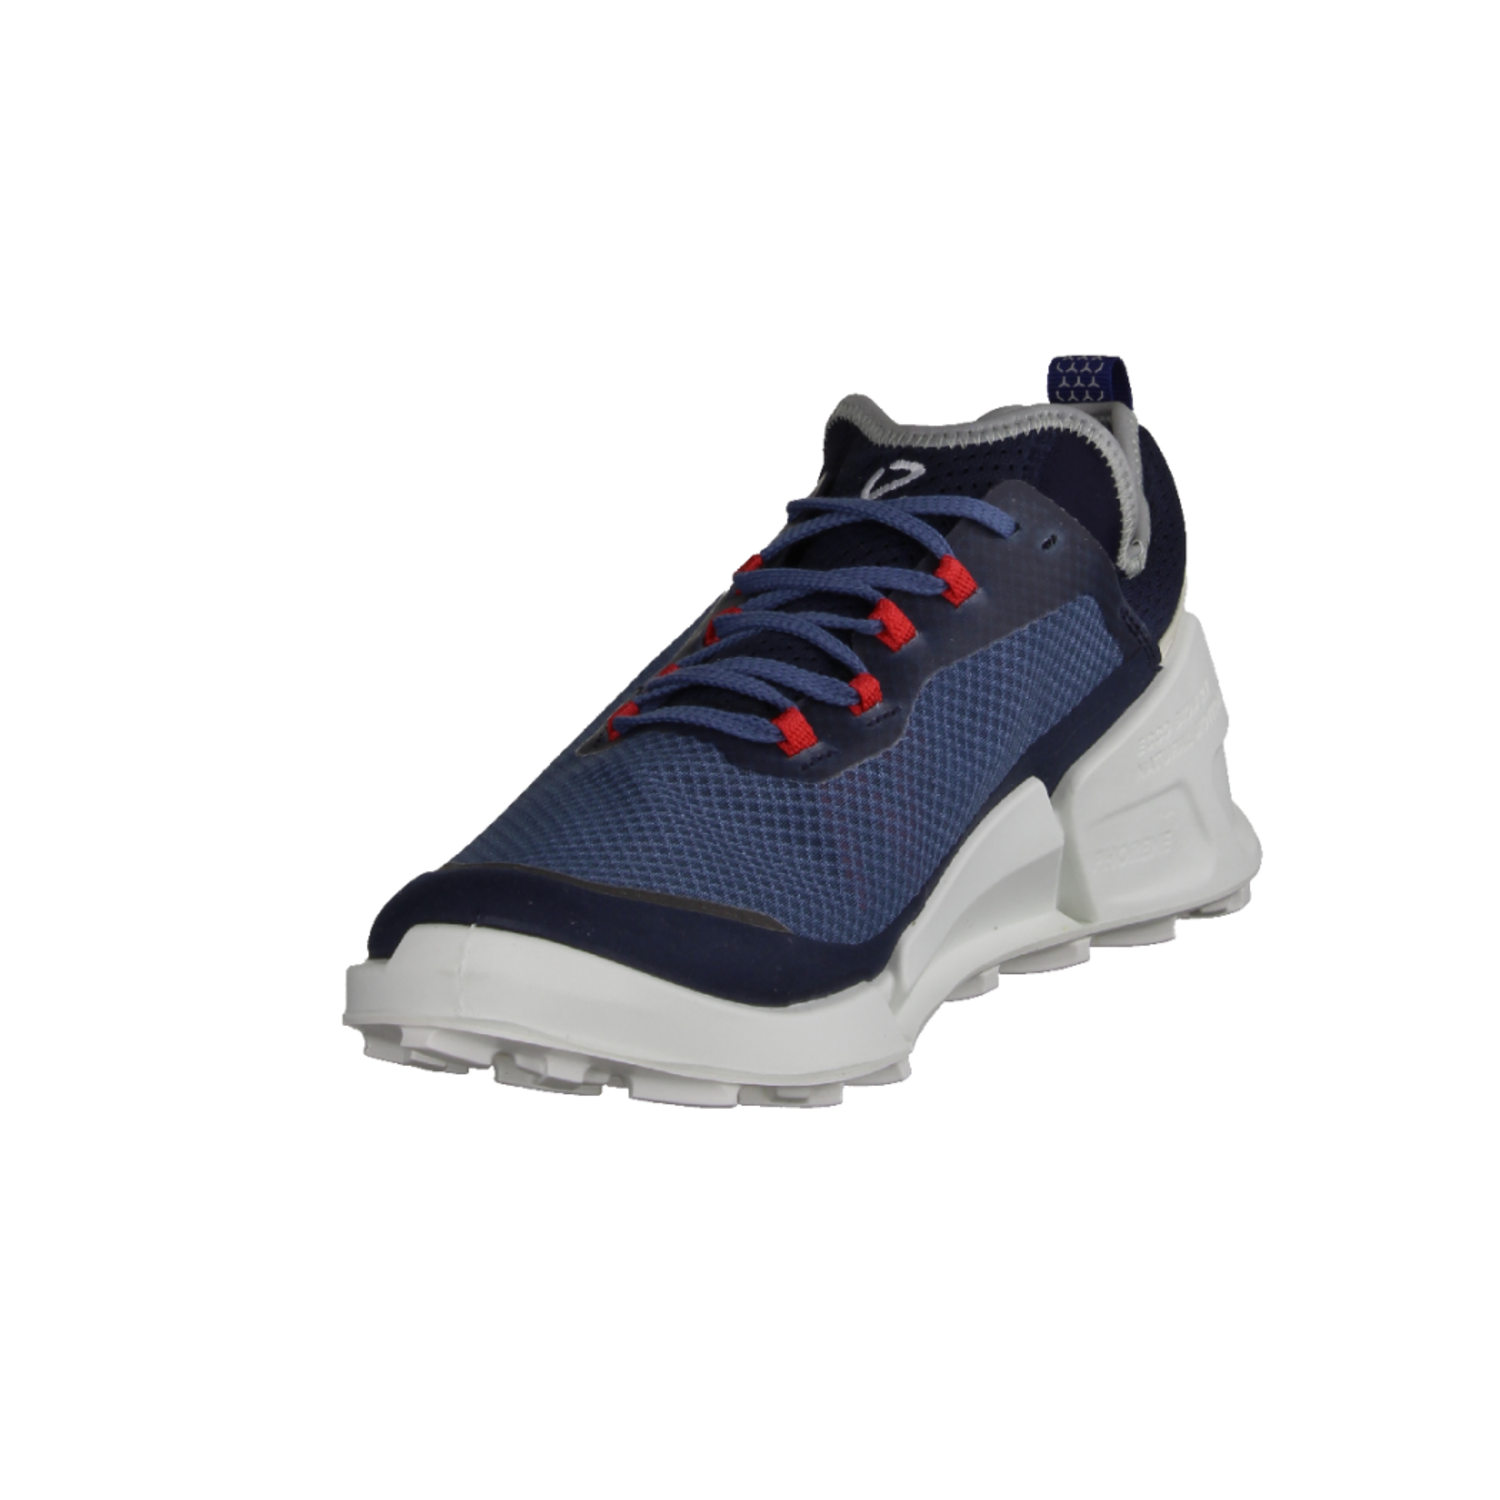 Ecco Biom X Blue/Shadow moderner Sneaker White Marine/Retro M 2.1 8228046059 für Herren Country